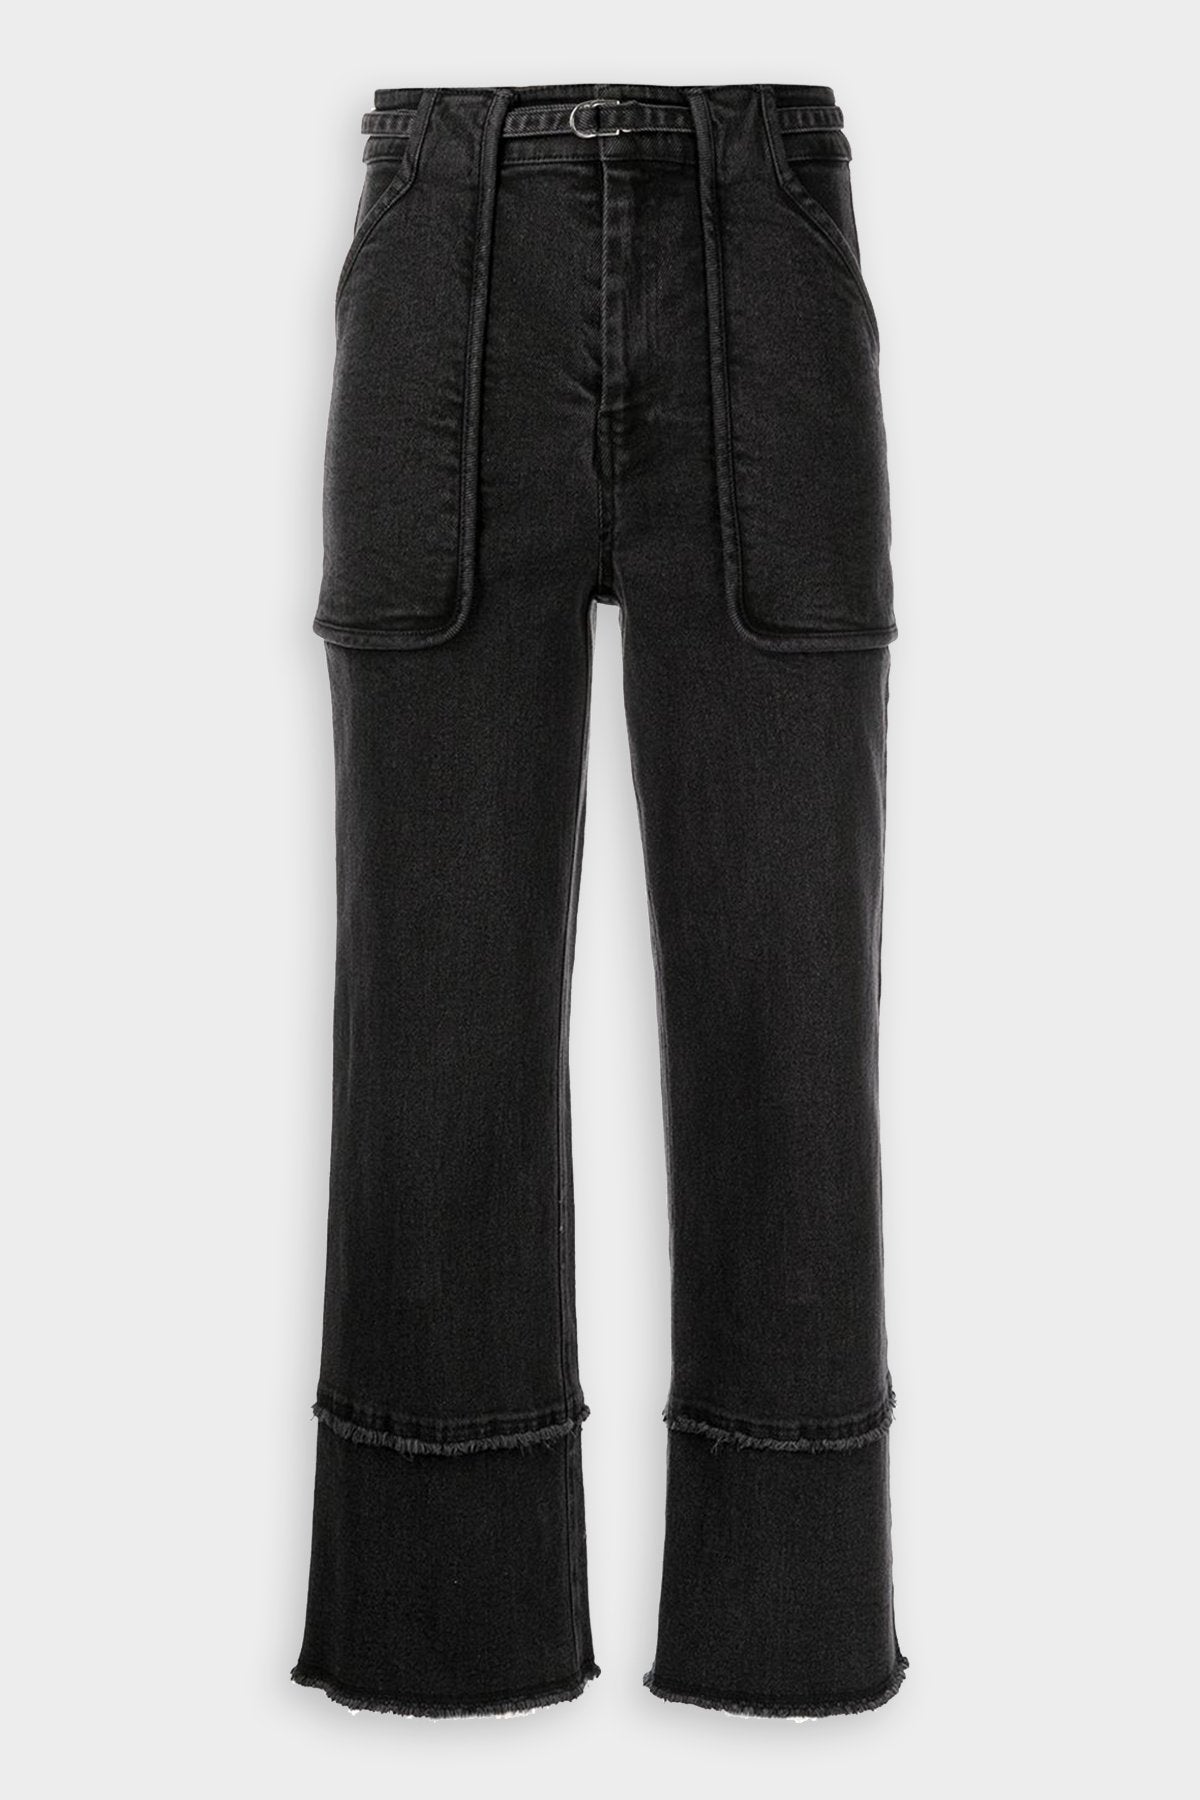 Zuri Cropped Wide Leg Pant in Black - shop-olivia.com